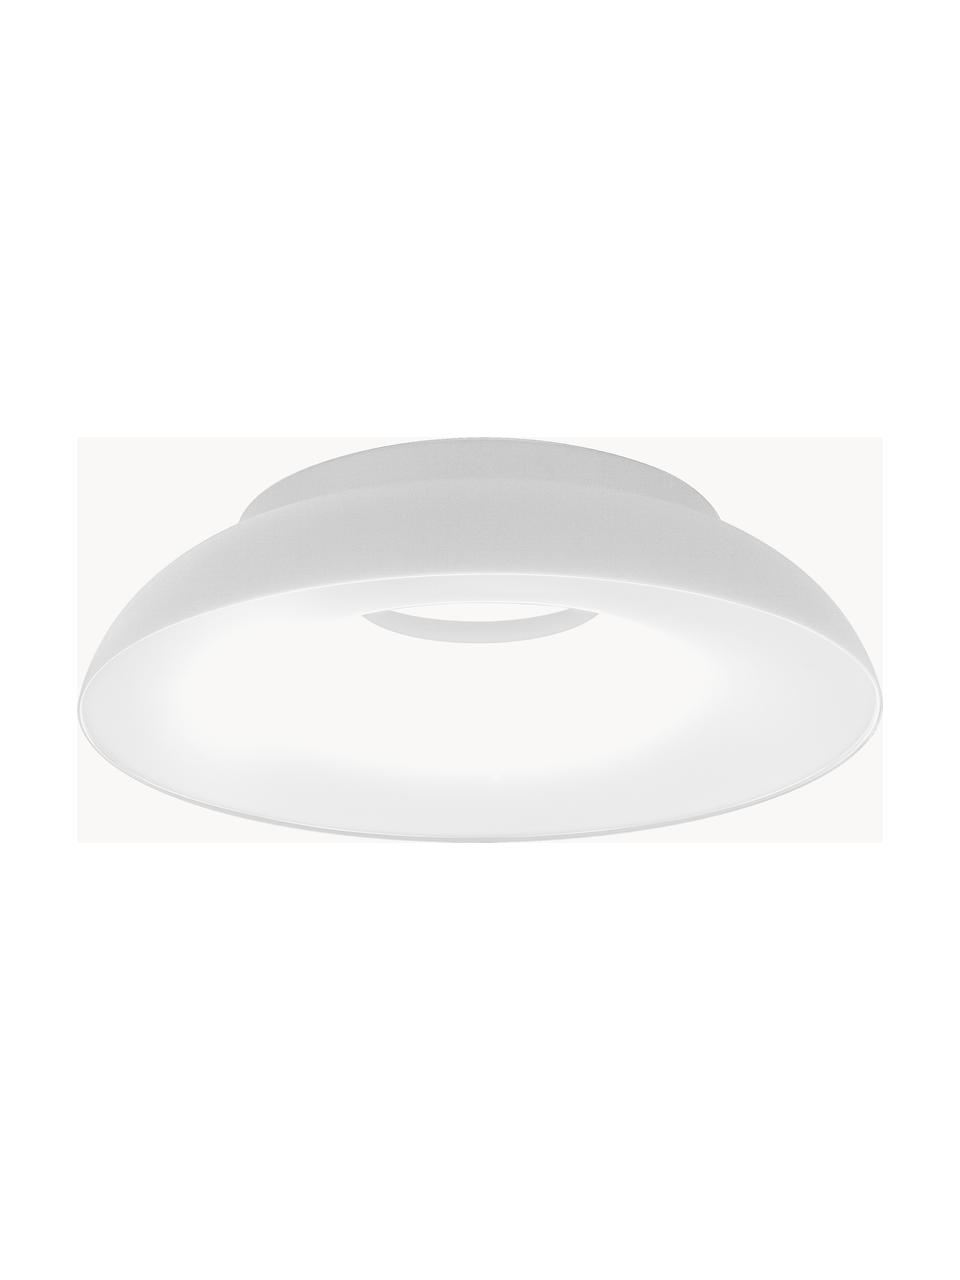 Lampa sufitowa LED z funkcją przyciemniania Maggiolone, Aluminium lakierowane, Biały, Ø 60 x W 15 cm